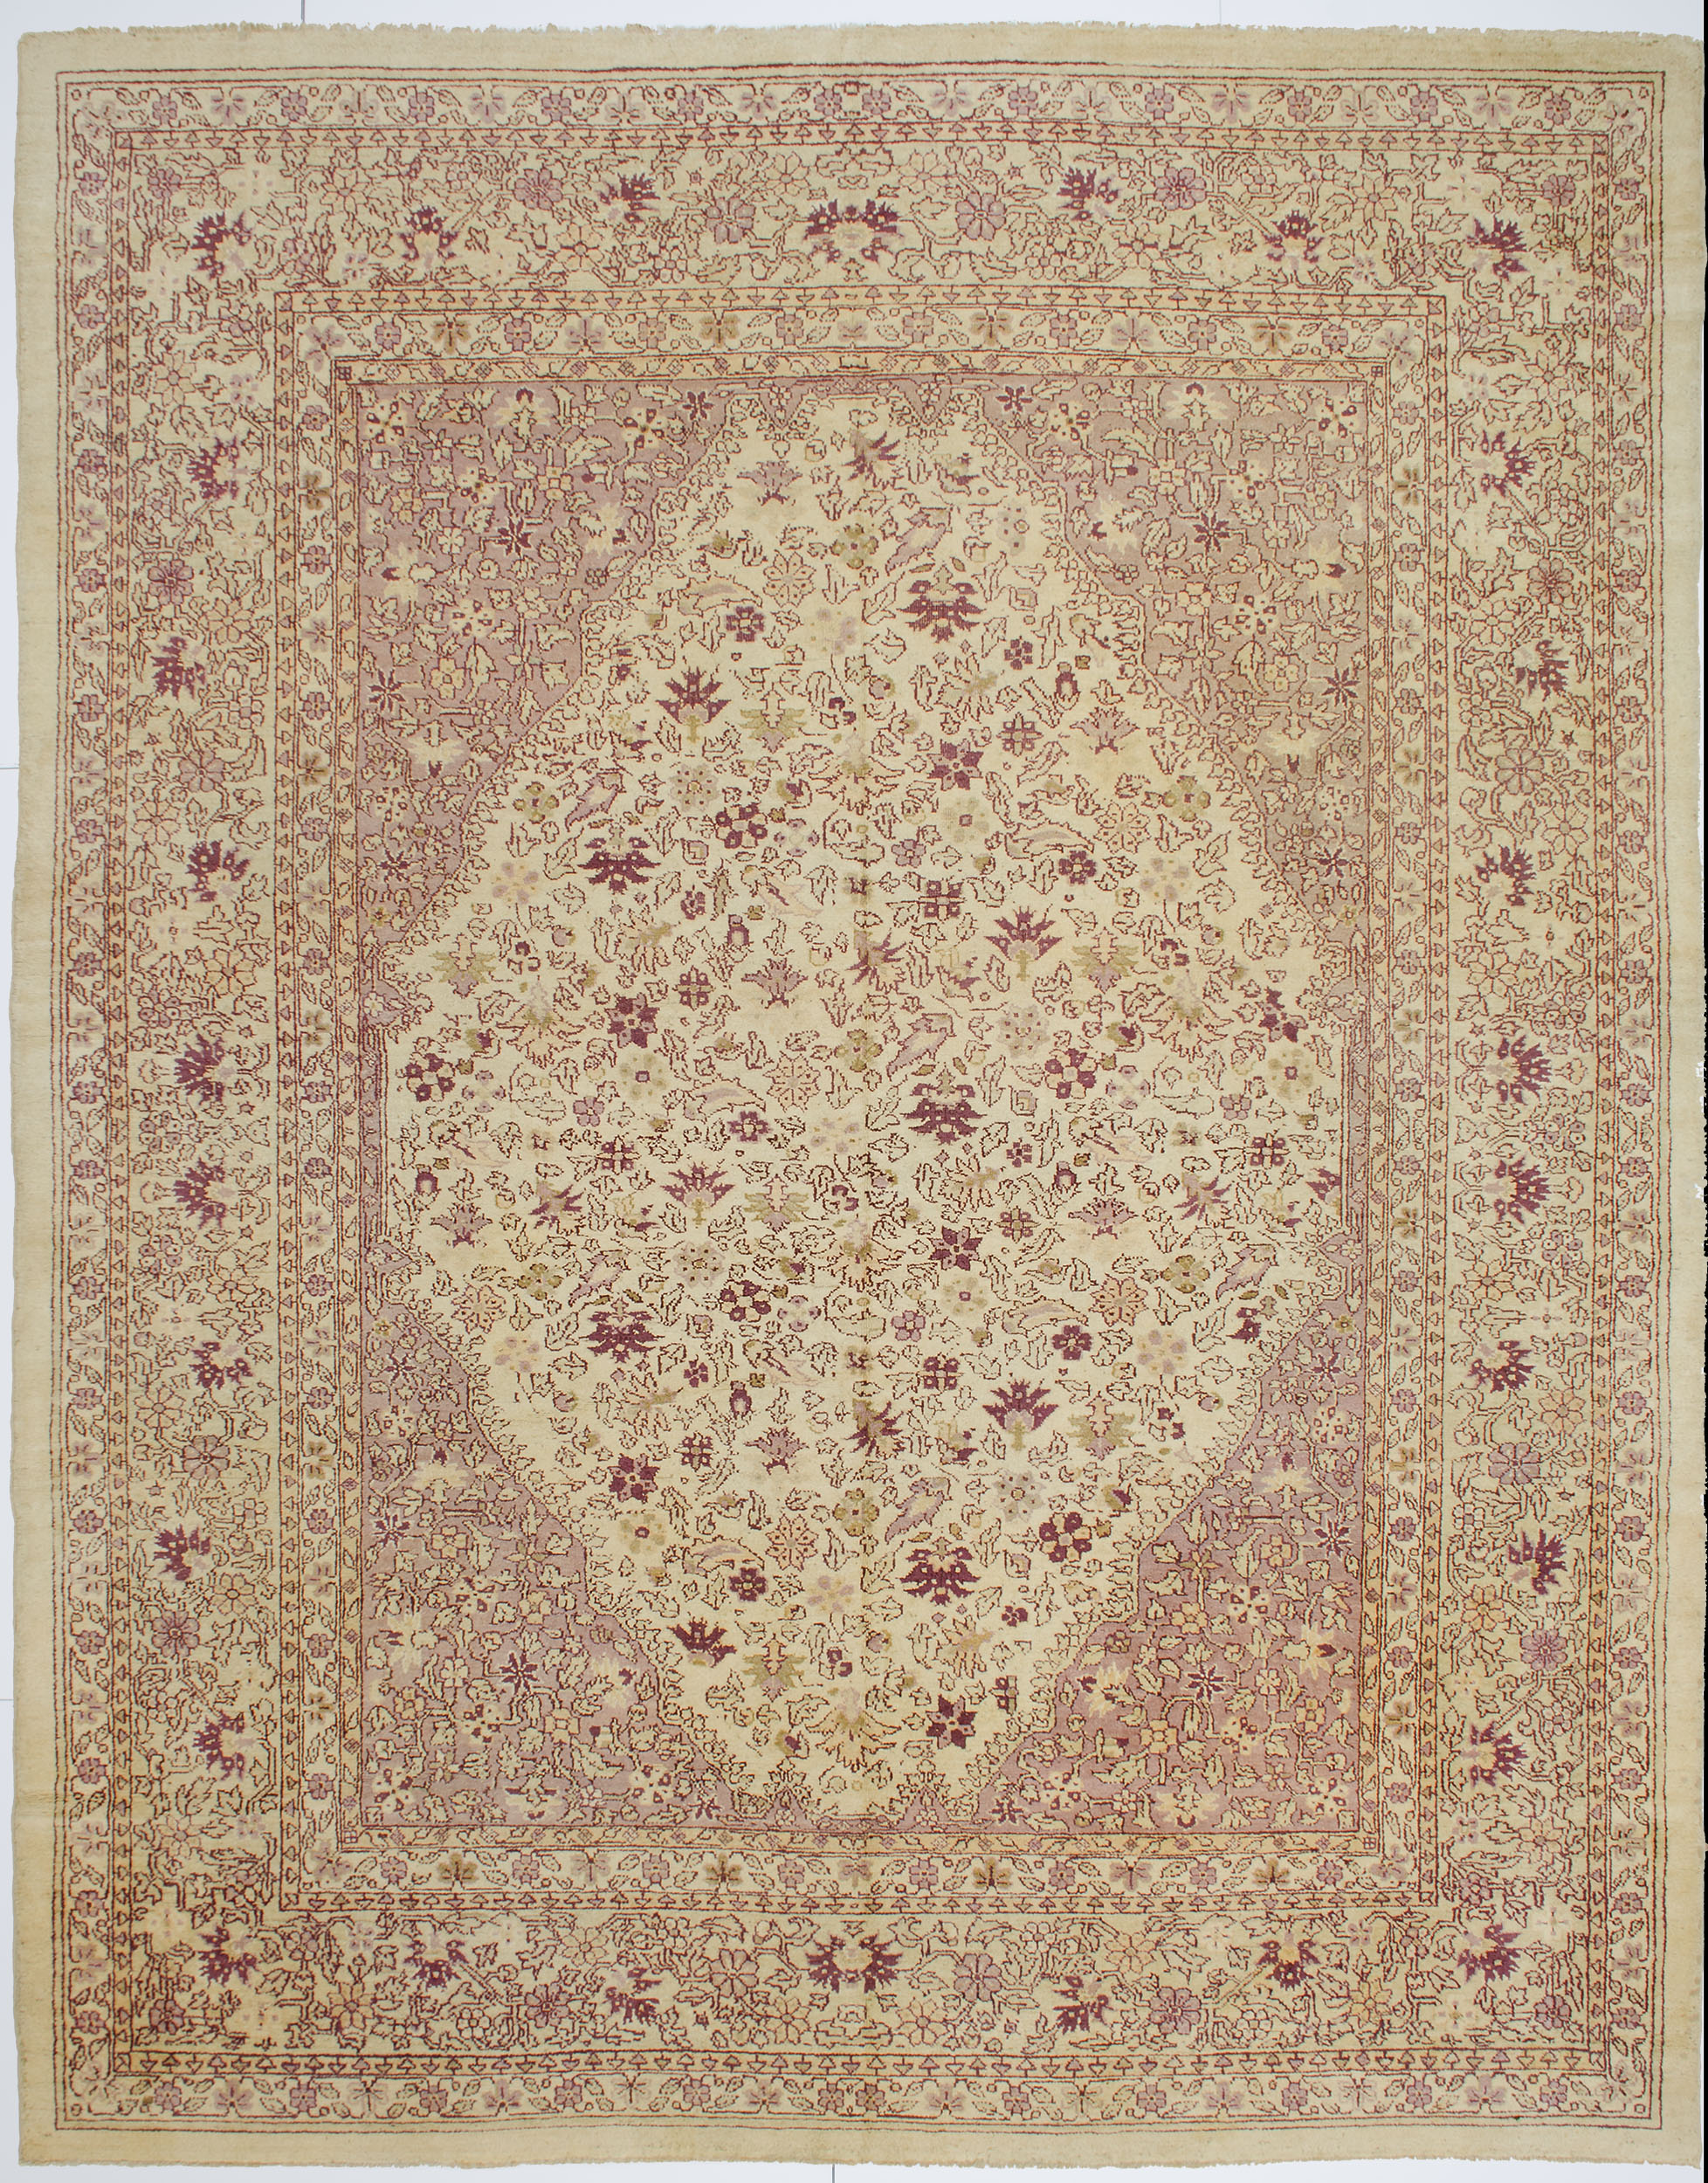 Amritsar Carpet 11' 7" x 9' 0" 